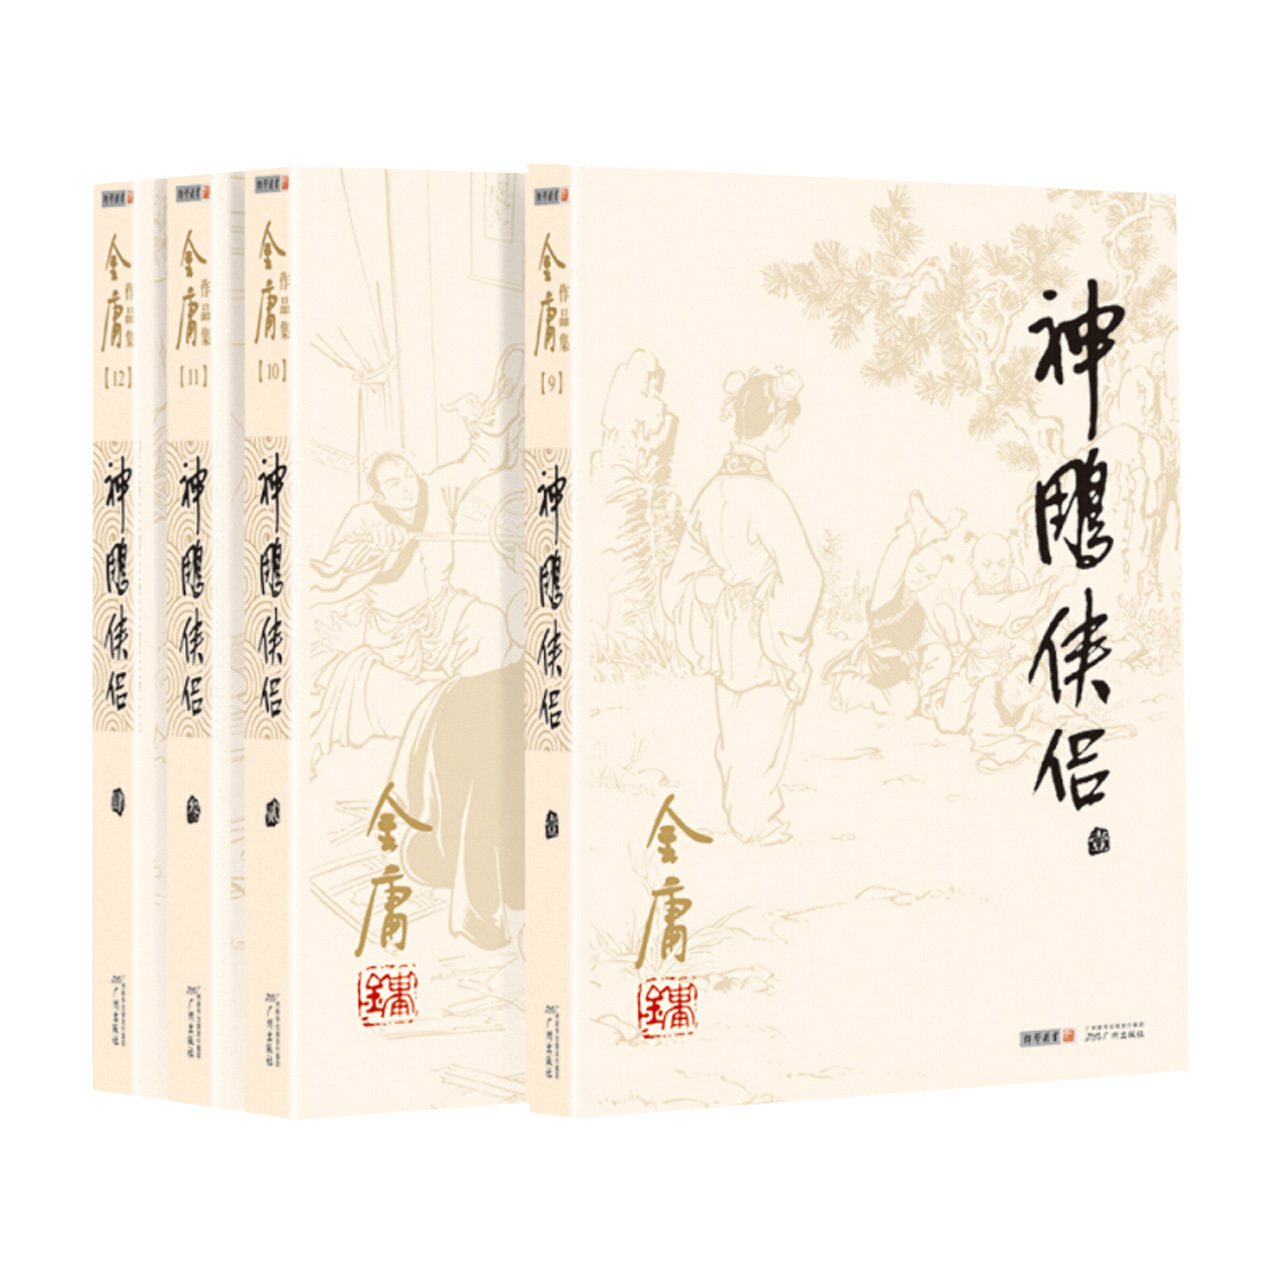 神雕侠侣 (共4册)金庸代表作中国经典武侠小说作品集 